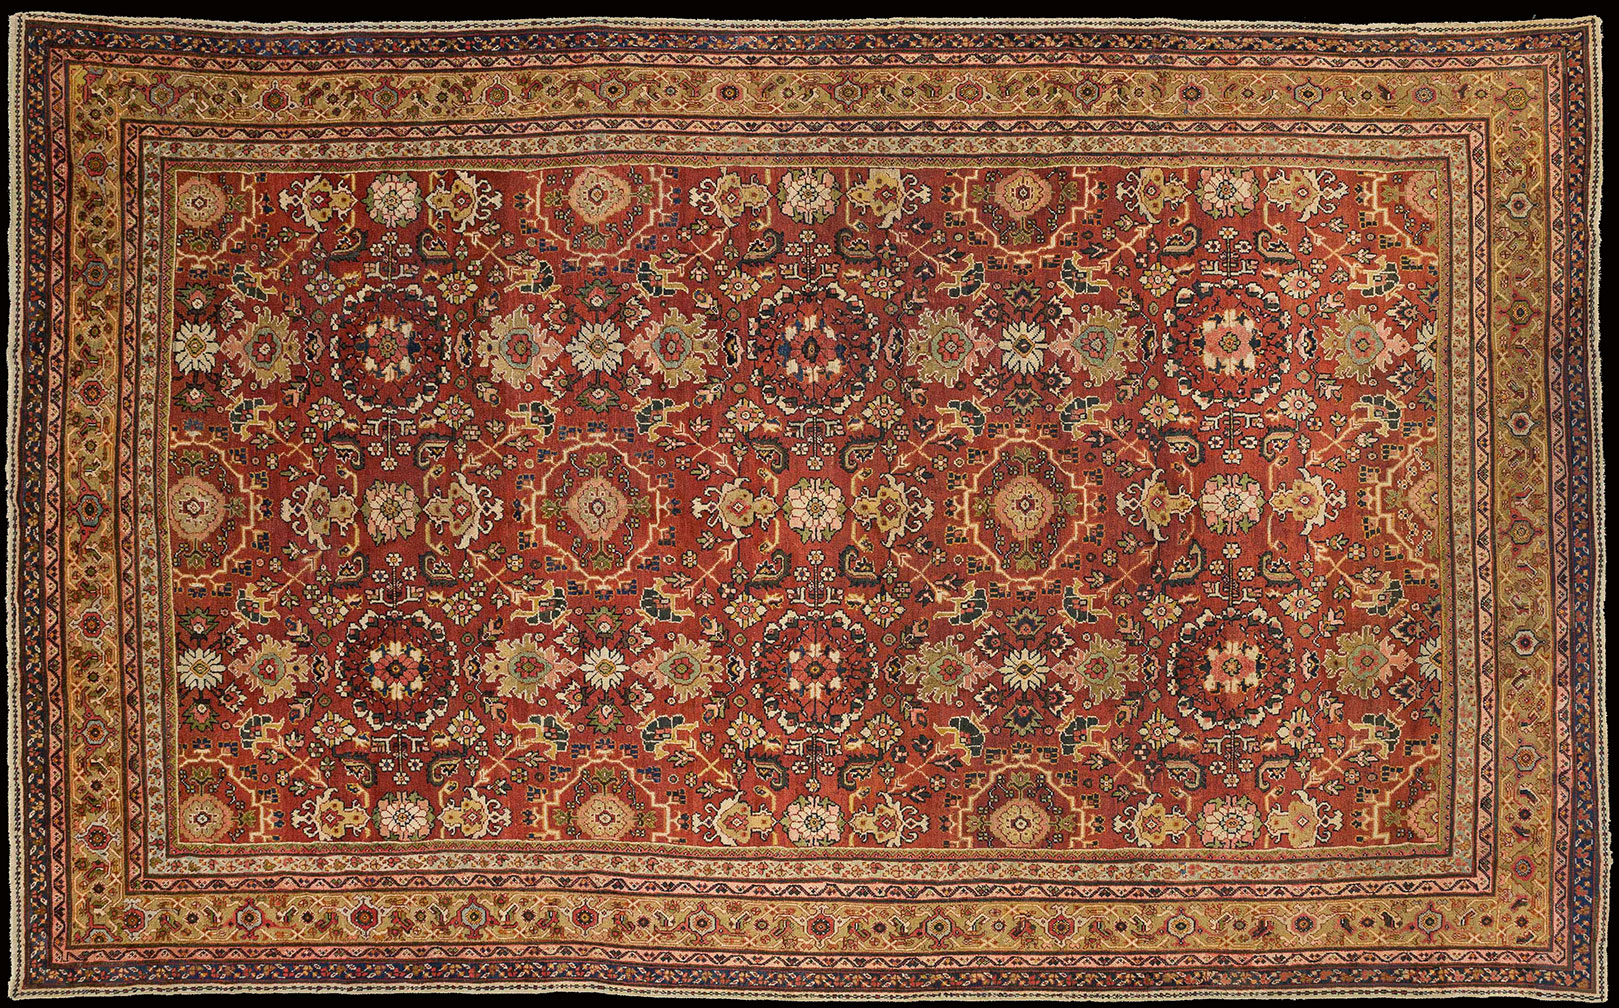 Antique mahal Carpet - # 52102